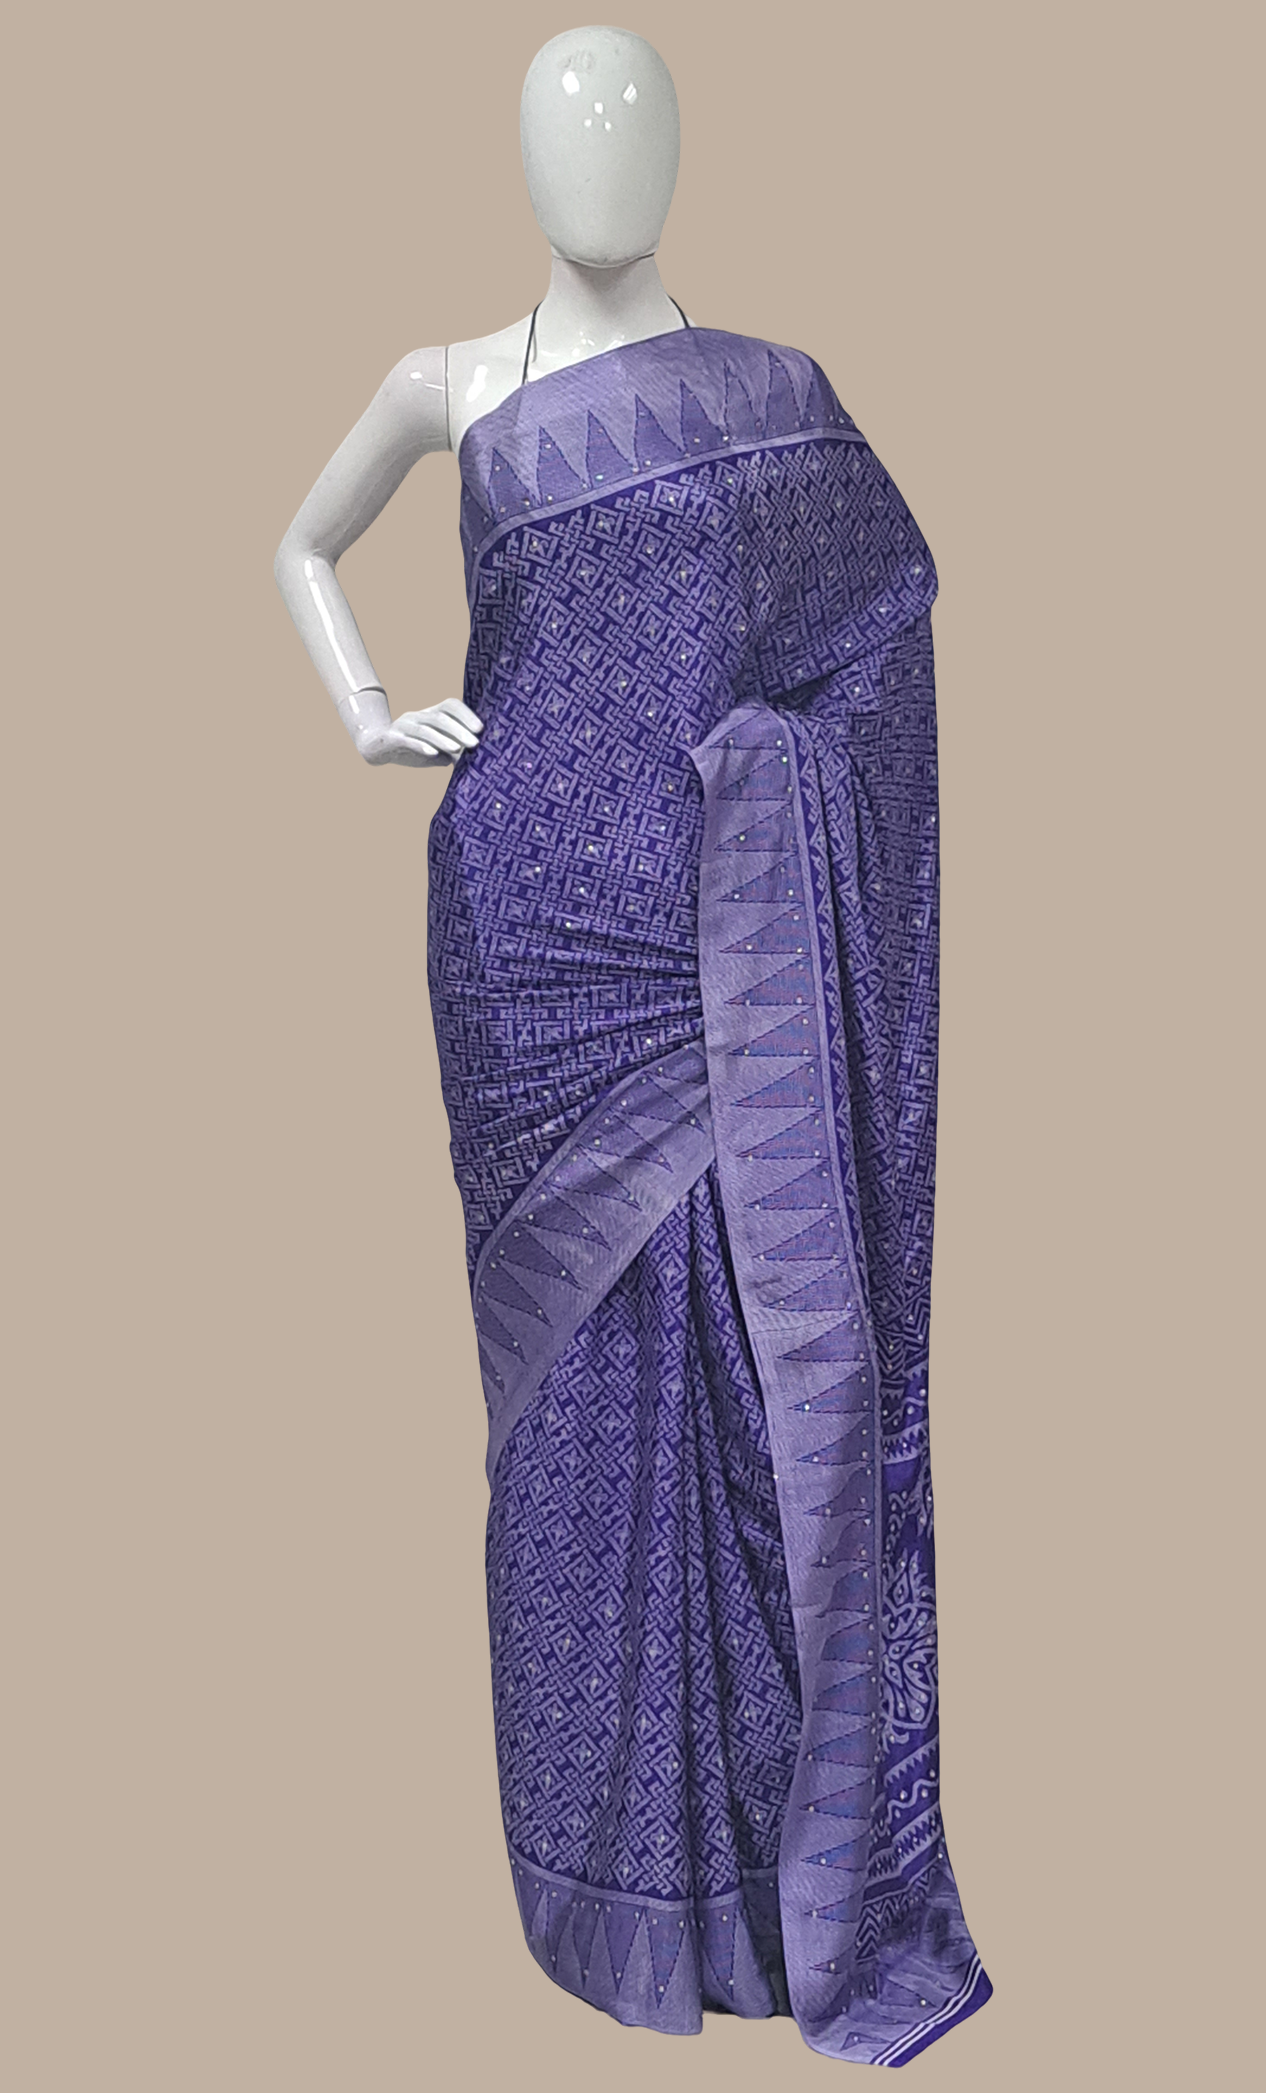 Royal Blue Printed Sari